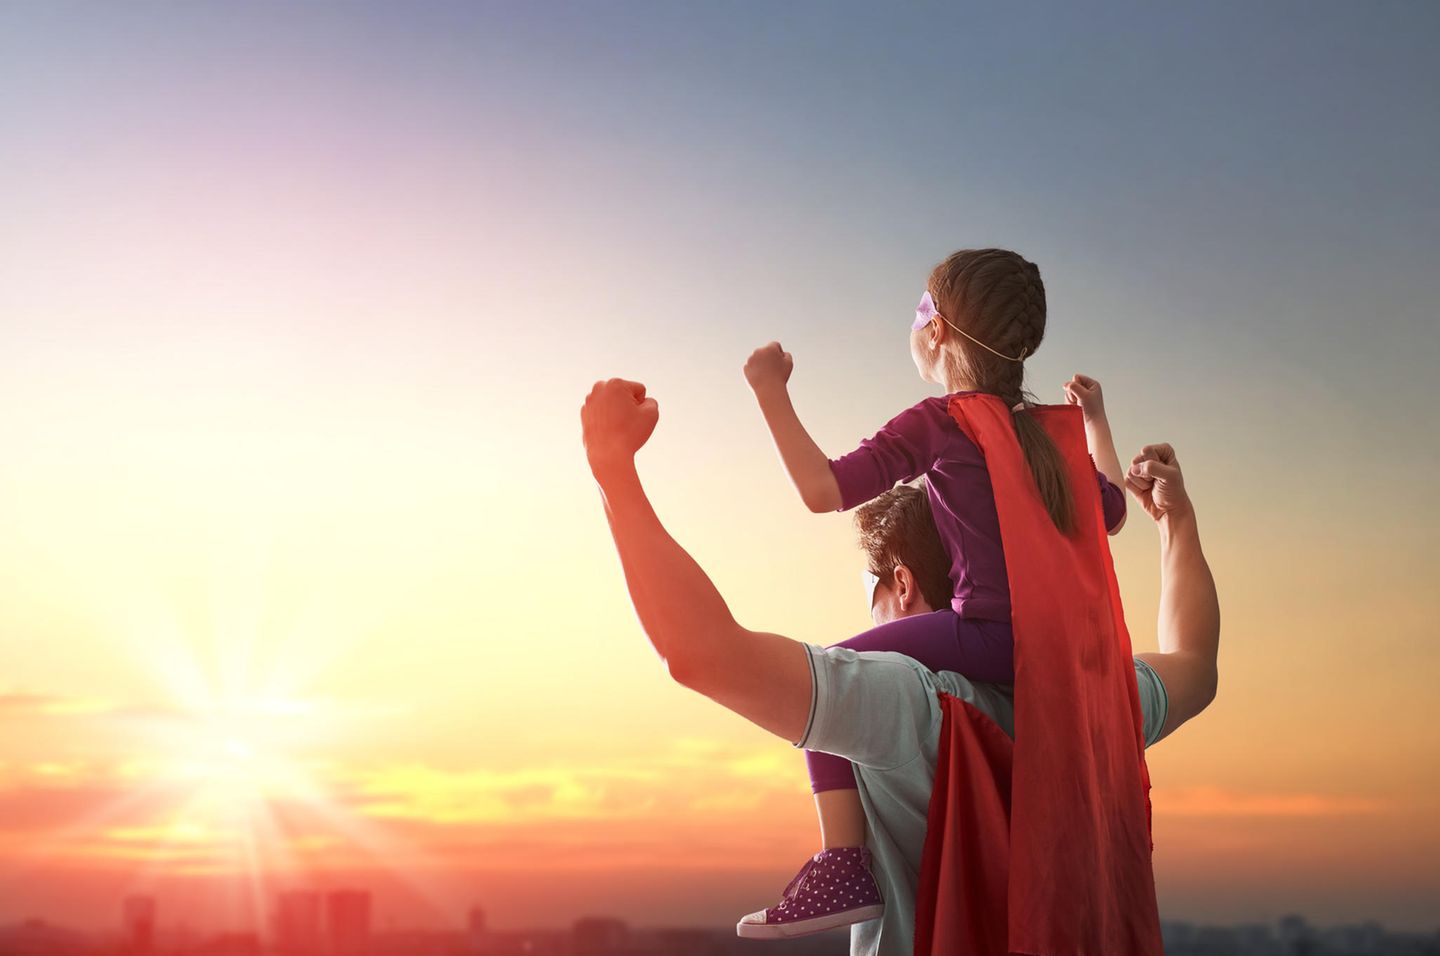 Vater hat Tochter auf Schultern und beide tragen Superheldenkostüme